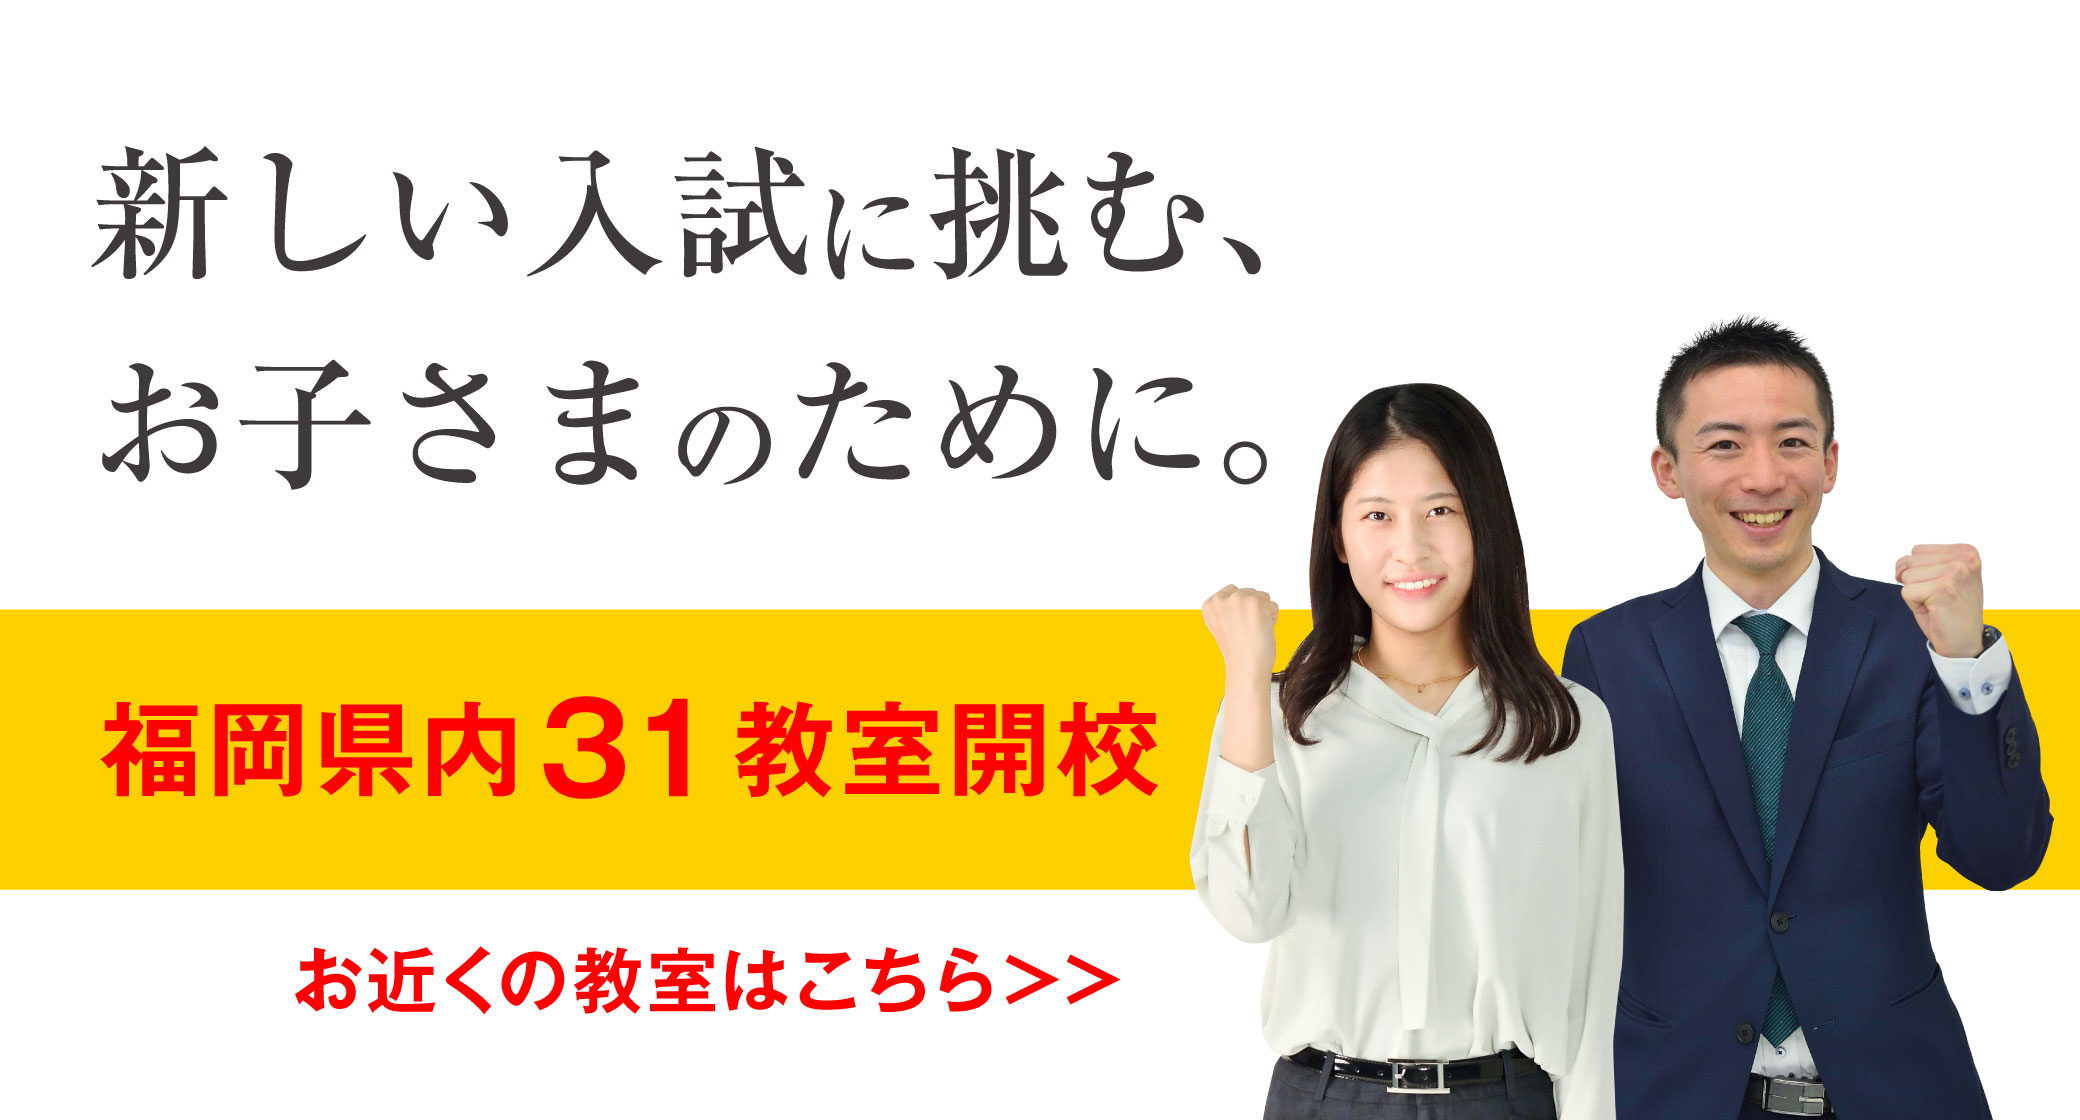 新しい入試に挑む、お子さまのために。福岡県内31教室開校。お近くの教室はこちら